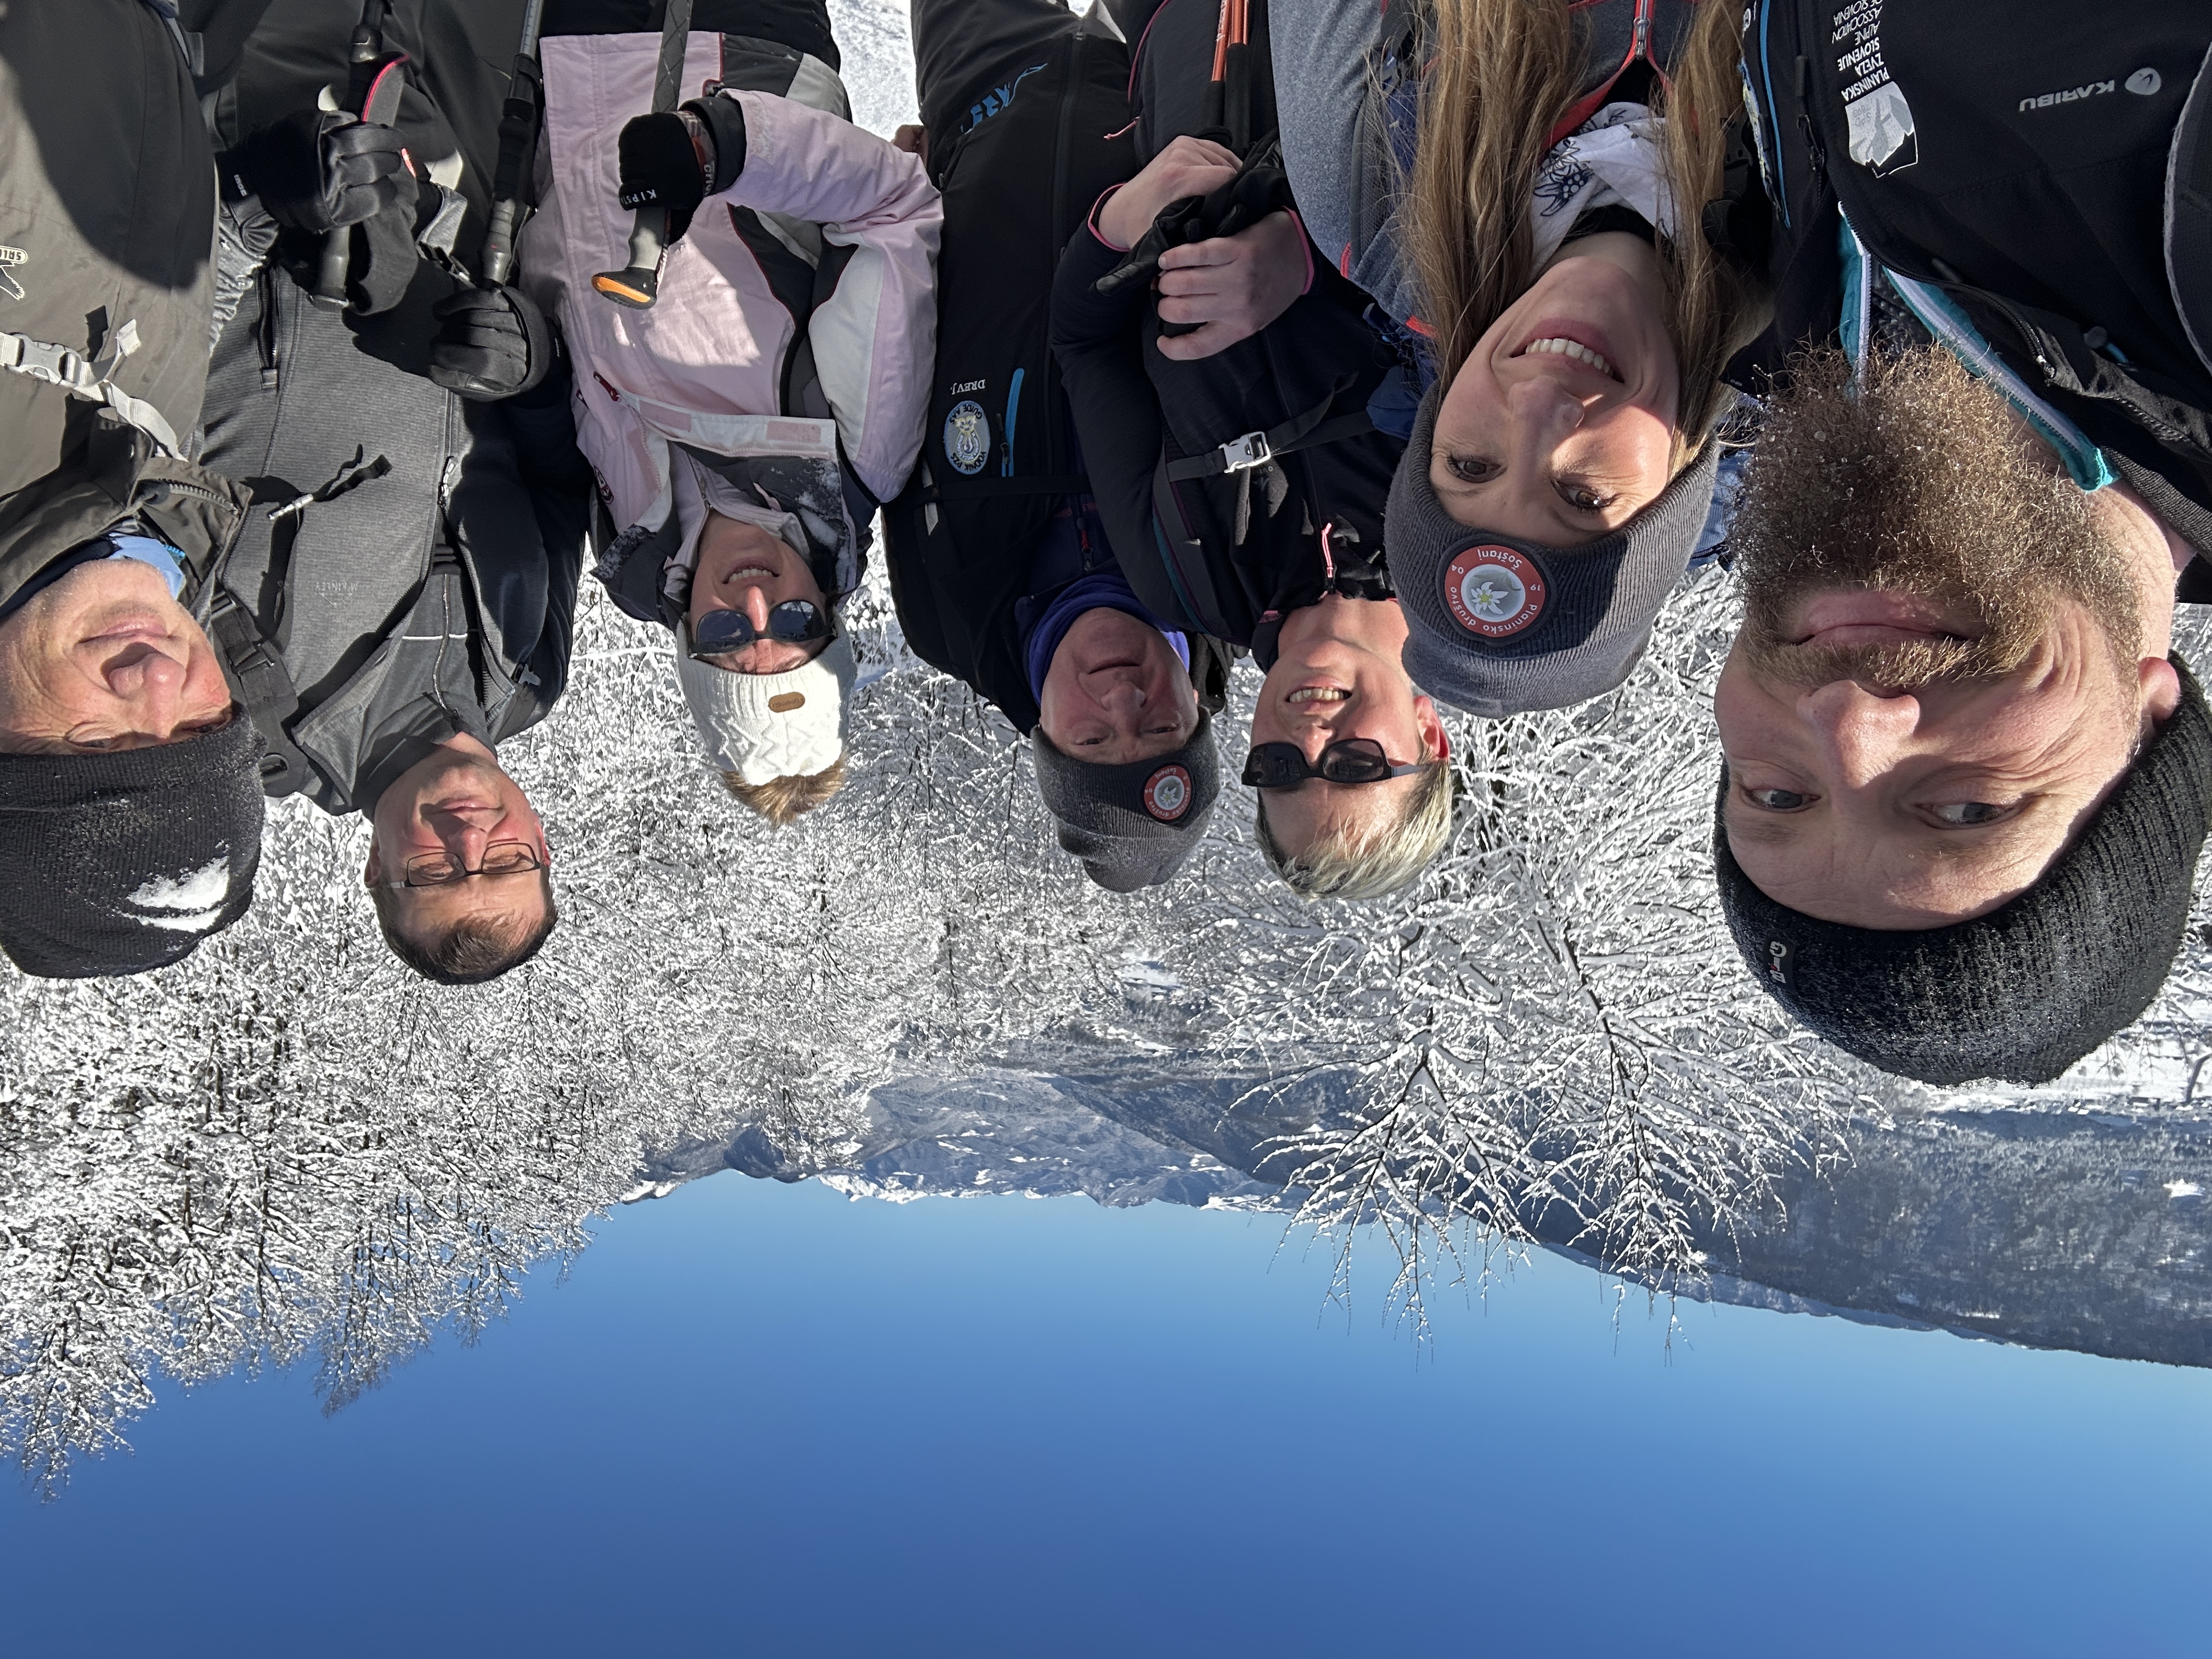 Pohod ˝Zdravju naproti˝ na Goro Oljko (733 m)